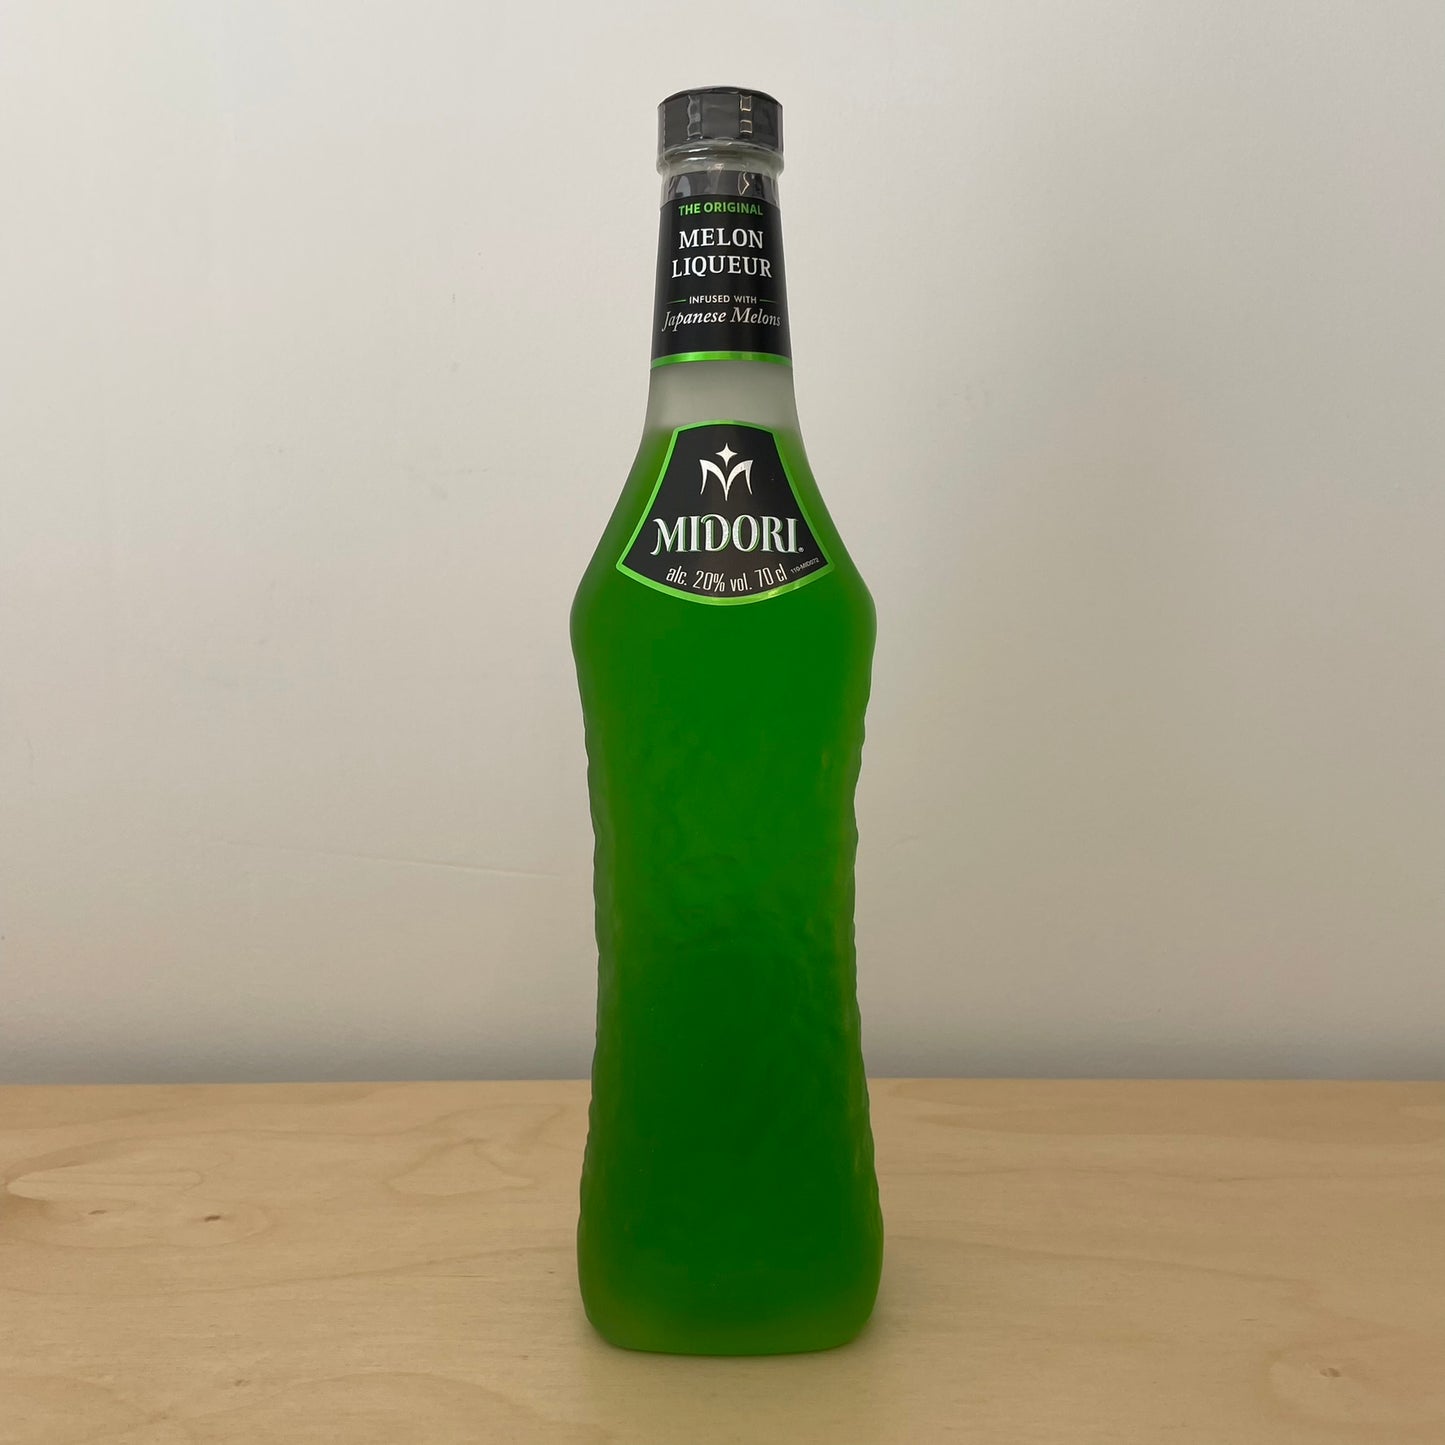 Midori Melon Liqueur (70cl Bottle)